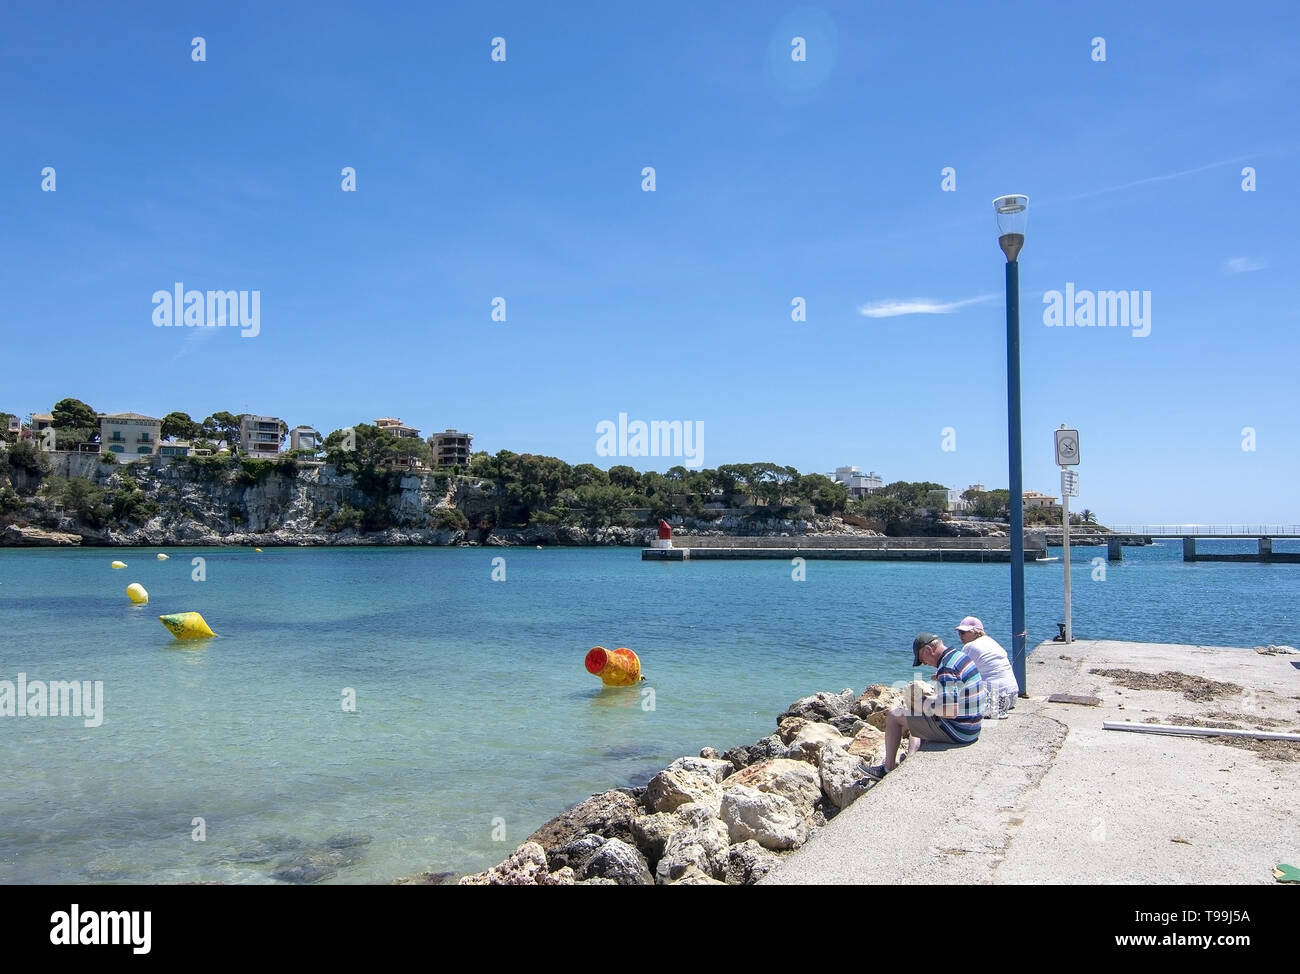 PORTO CRISTO, MALLORCA, Spagna - 16 Maggio 2019: giovane seduto sul molo in una giornata di sole su 16 Maggio 2019 in Porto Cristo, Mallorca, Spagna. Foto Stock